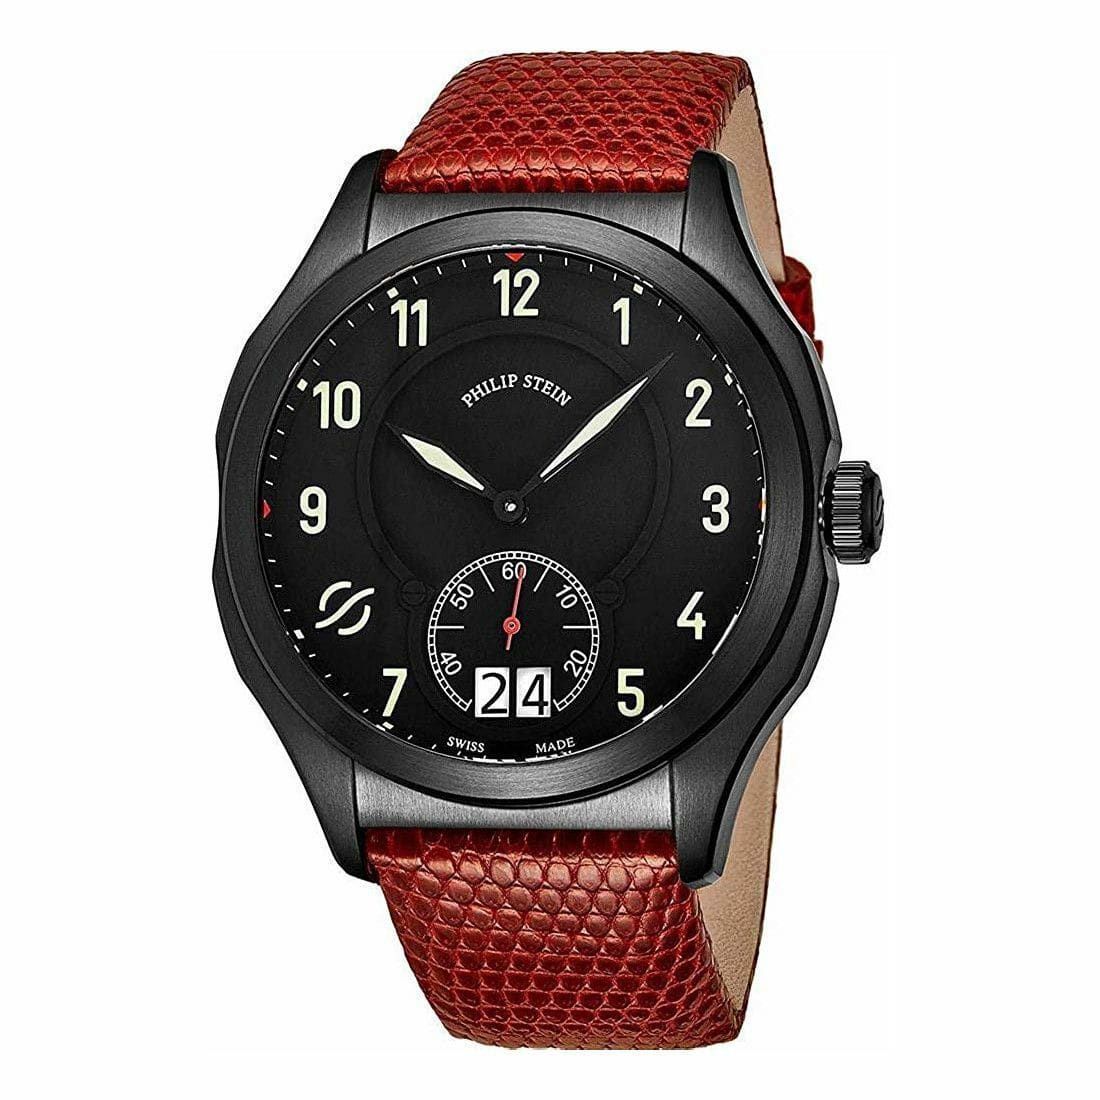 Philip Stein 17BSBKLZR Prestige Black Dial Men's Red Leather Quartz Watch 794504350340